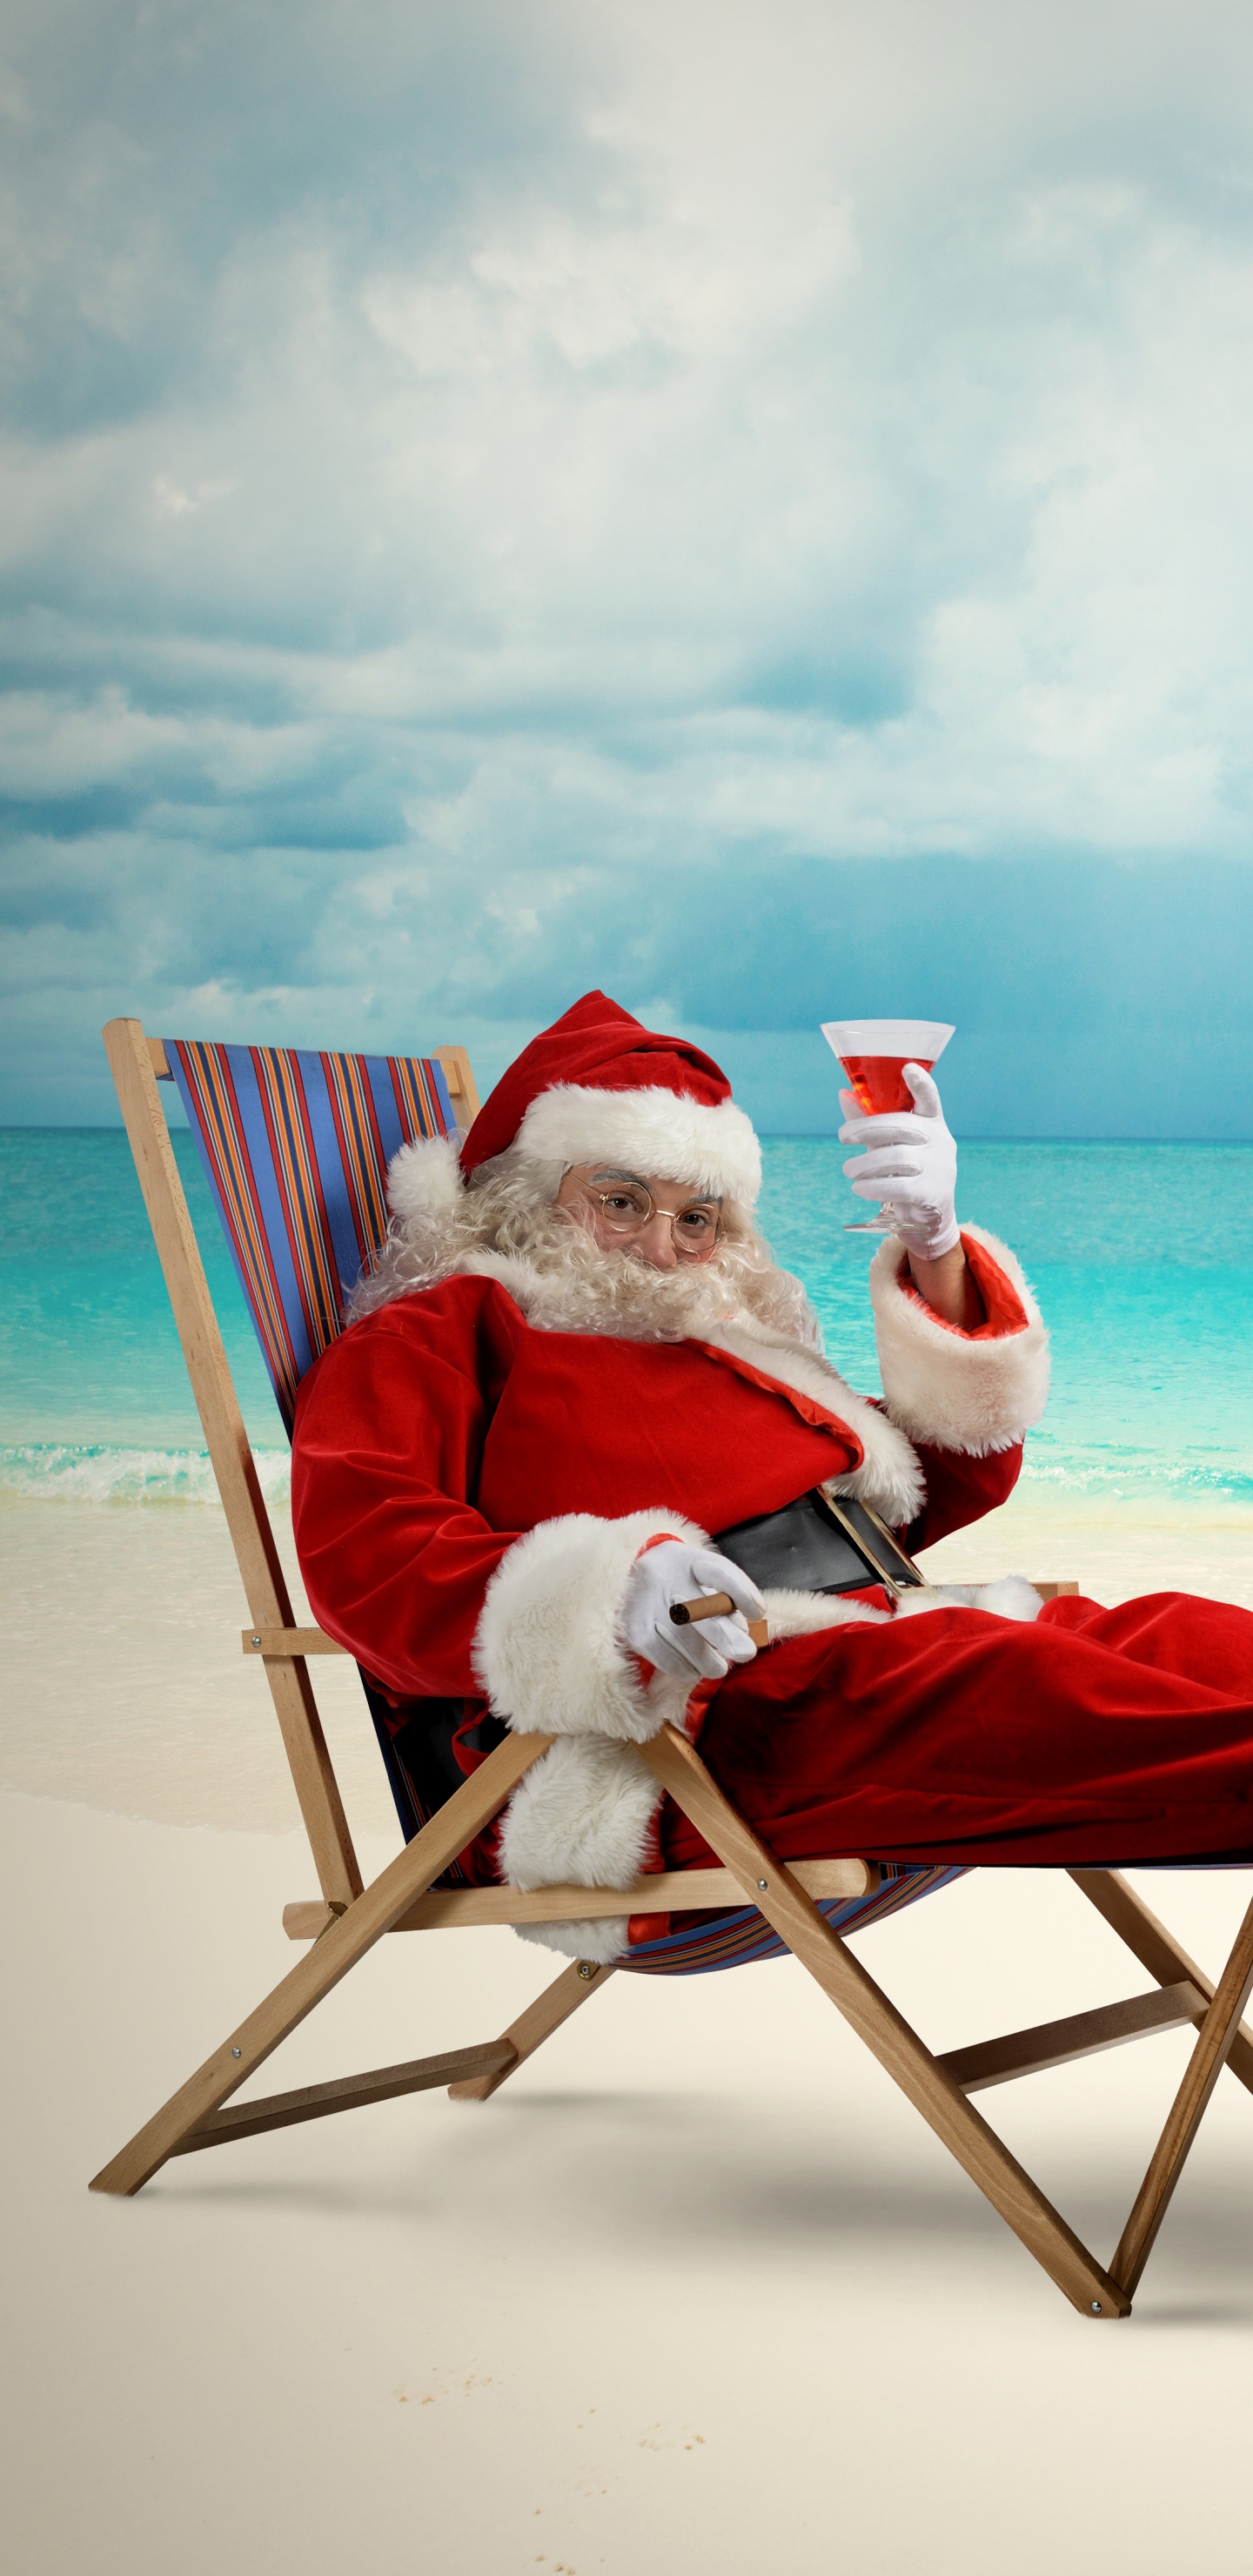 Weihnachtsmann, Weihnachten, Strand, Meer, Urlaub. Wallpaper in 1440x2960 Resolution